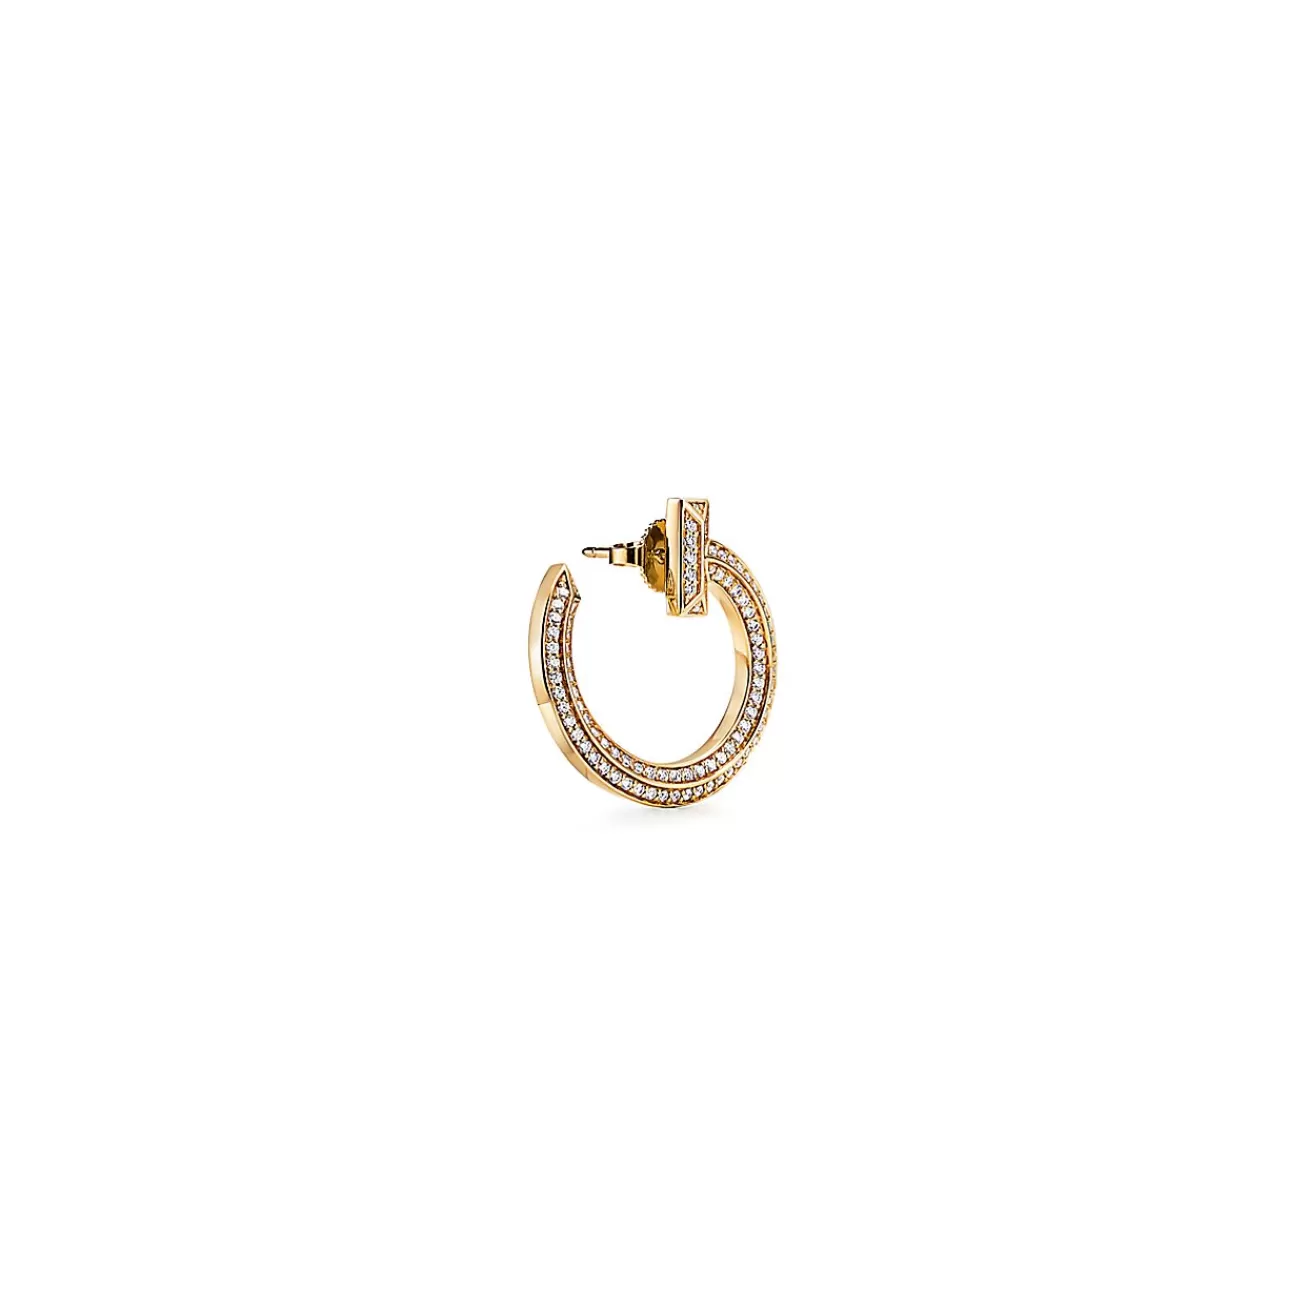 Tiffany & Co. Tiffany T T1 open hoop earrings in 18k gold with diamonds. | ^ Earrings | Gifts for Her